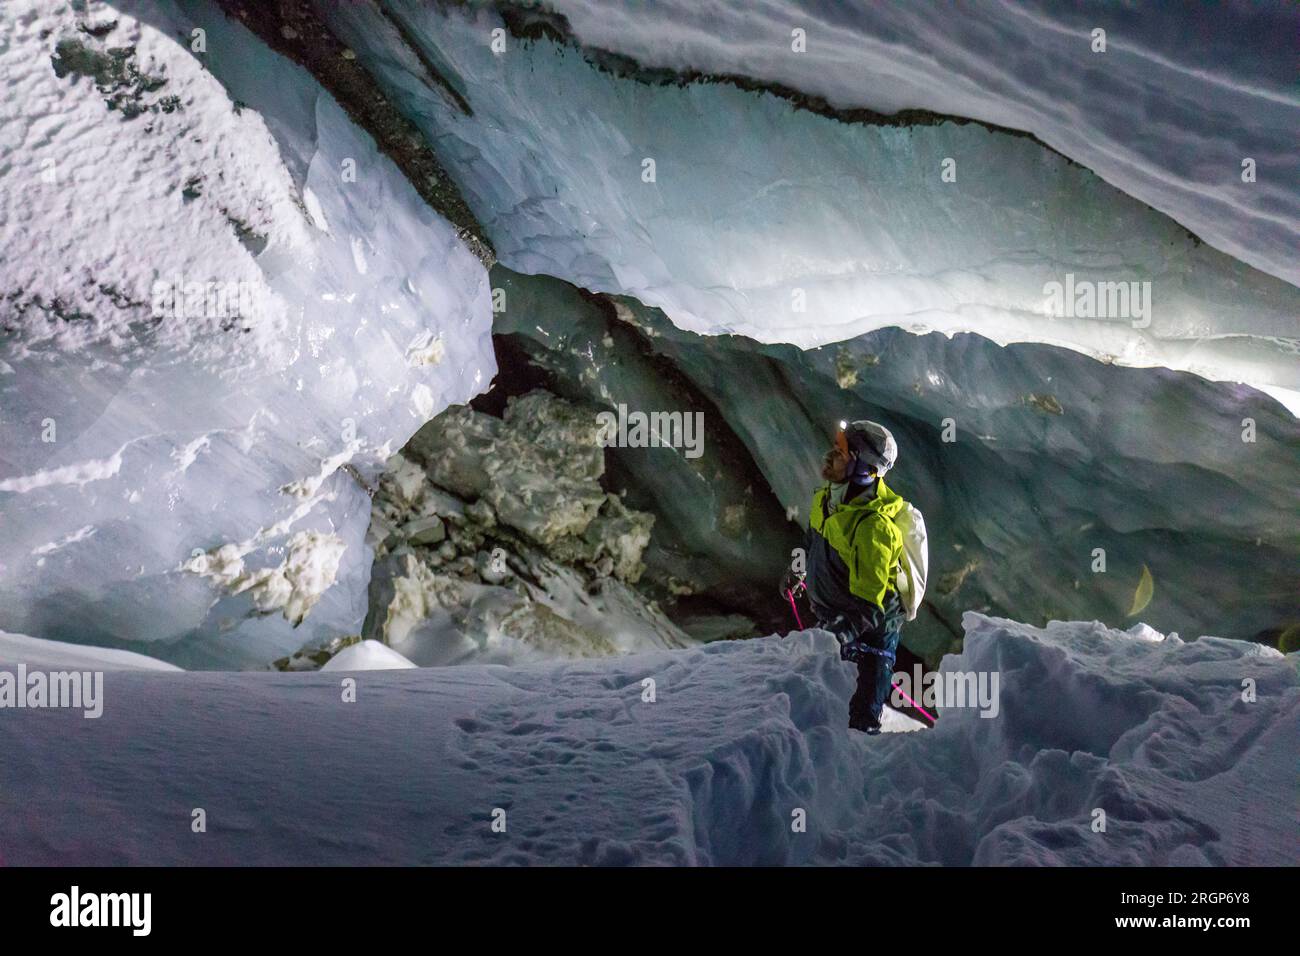 Entdecker- und Kletterabseile in Eis- und Schneehöhle Stockfoto